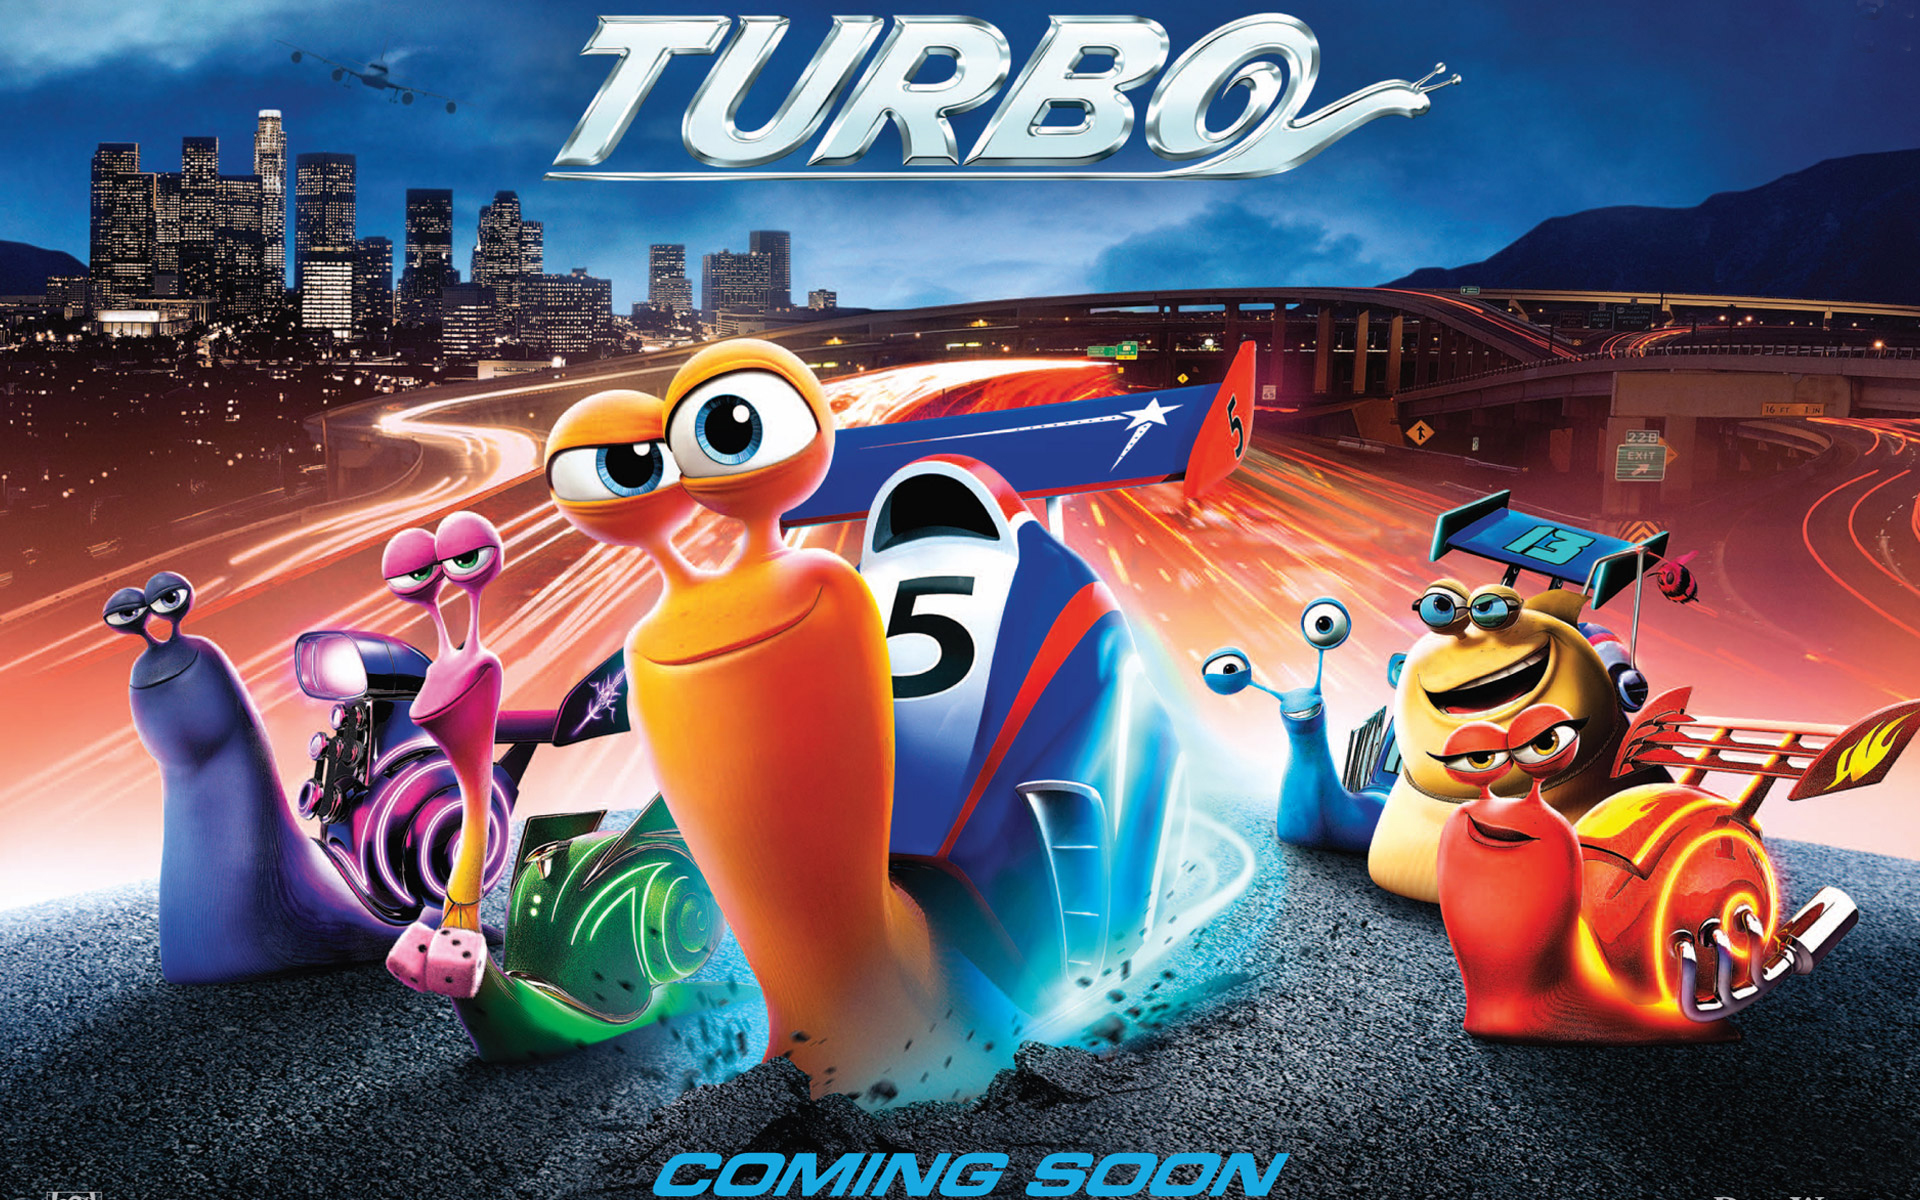 Descargar fondos de escritorio de Turbo HD